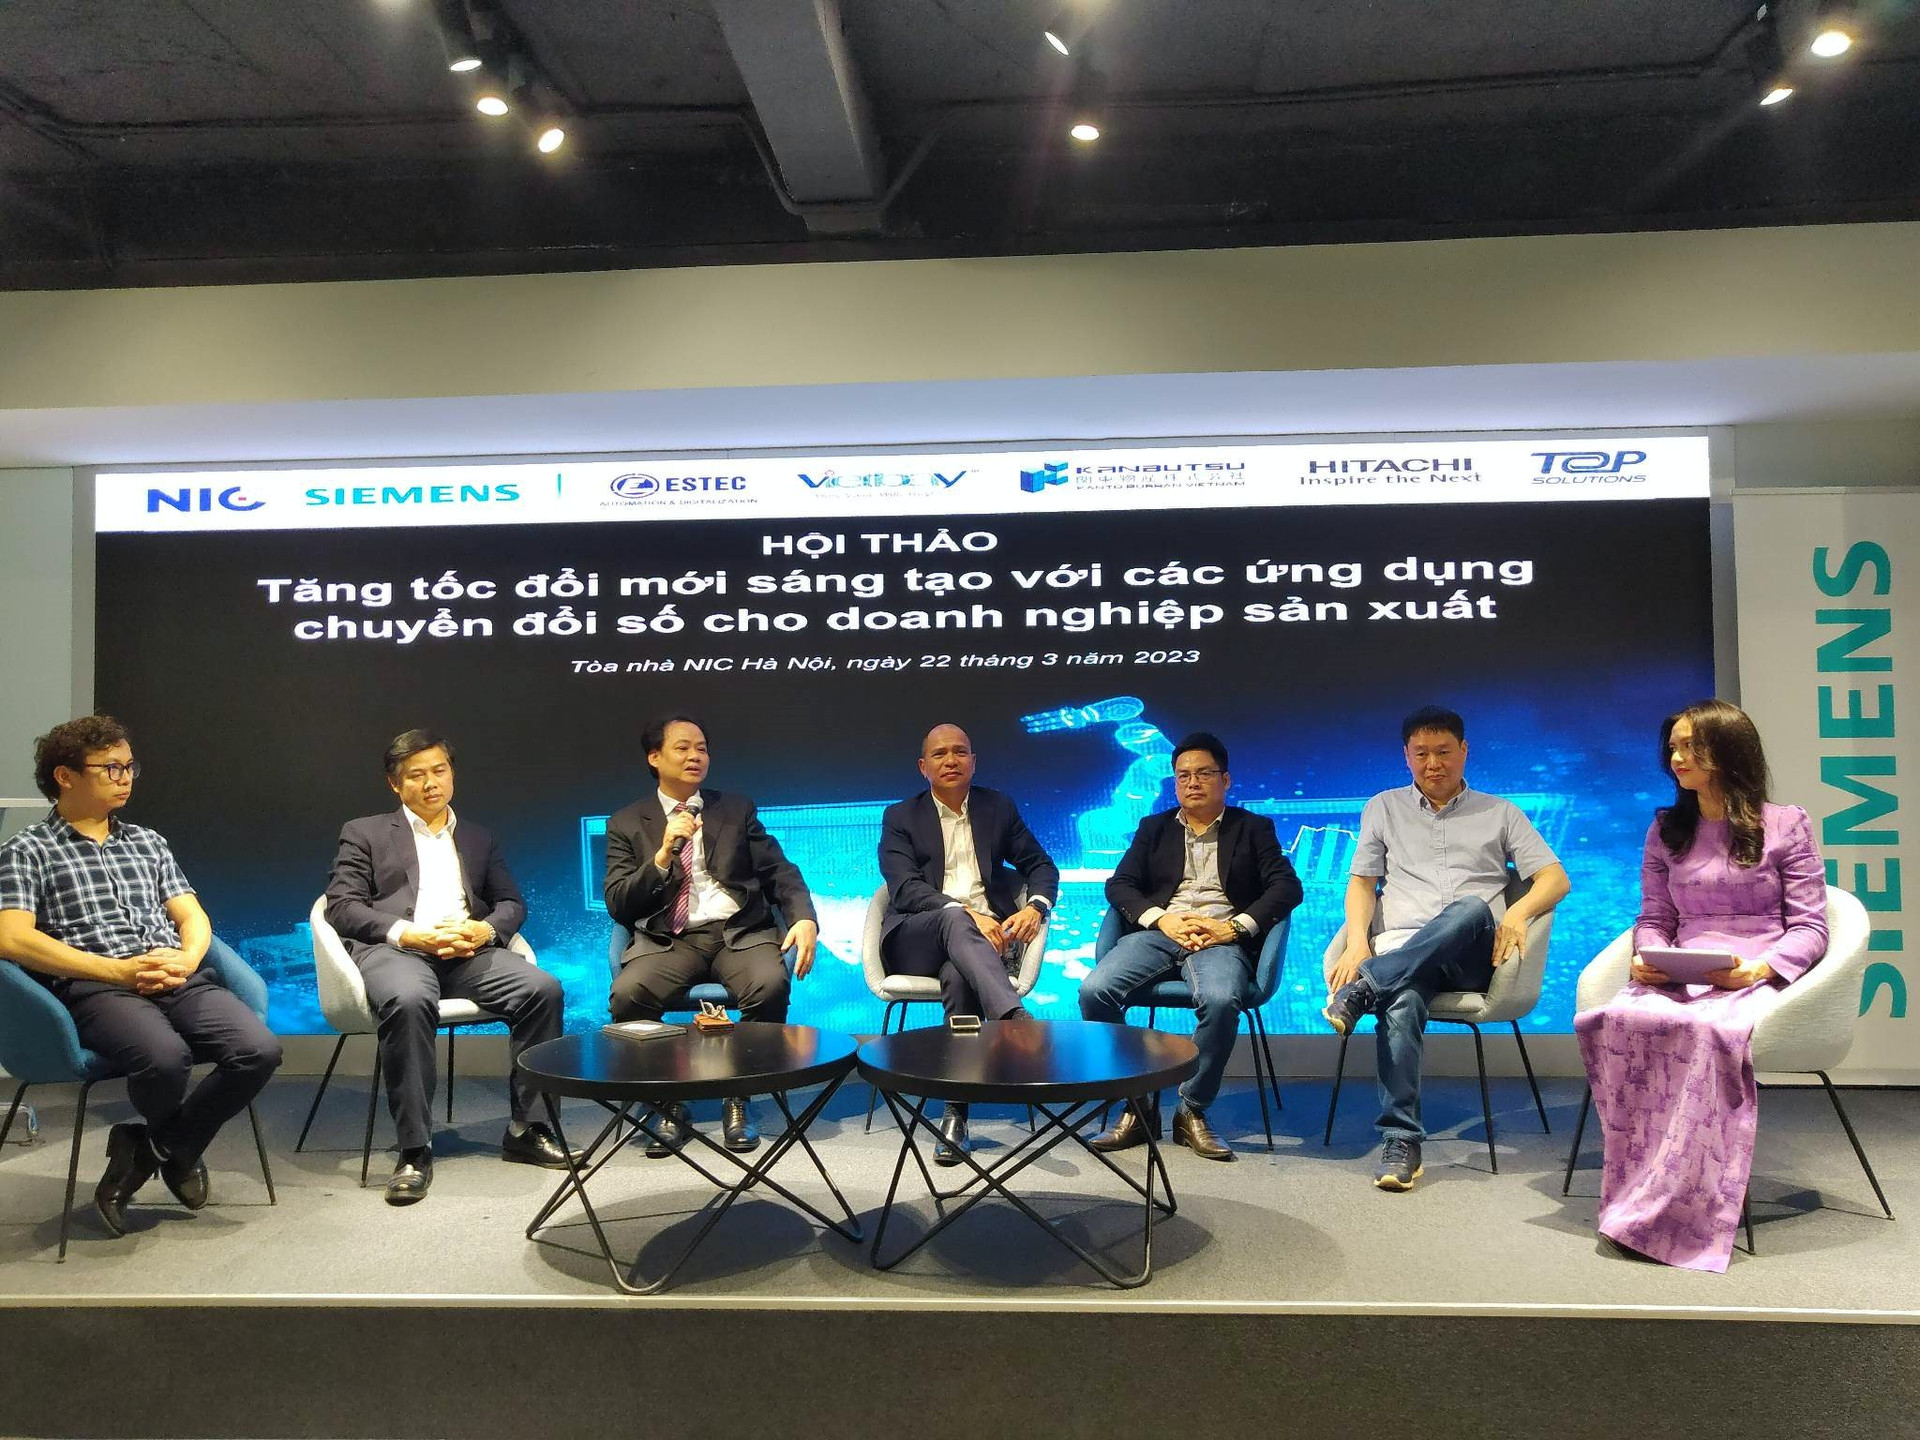 Siemens Việt Nam thúc đẩy đổi mới sáng tạo cho doanh nghiệp sản xuất với thông qua các ứng dụng chuyển đổi số